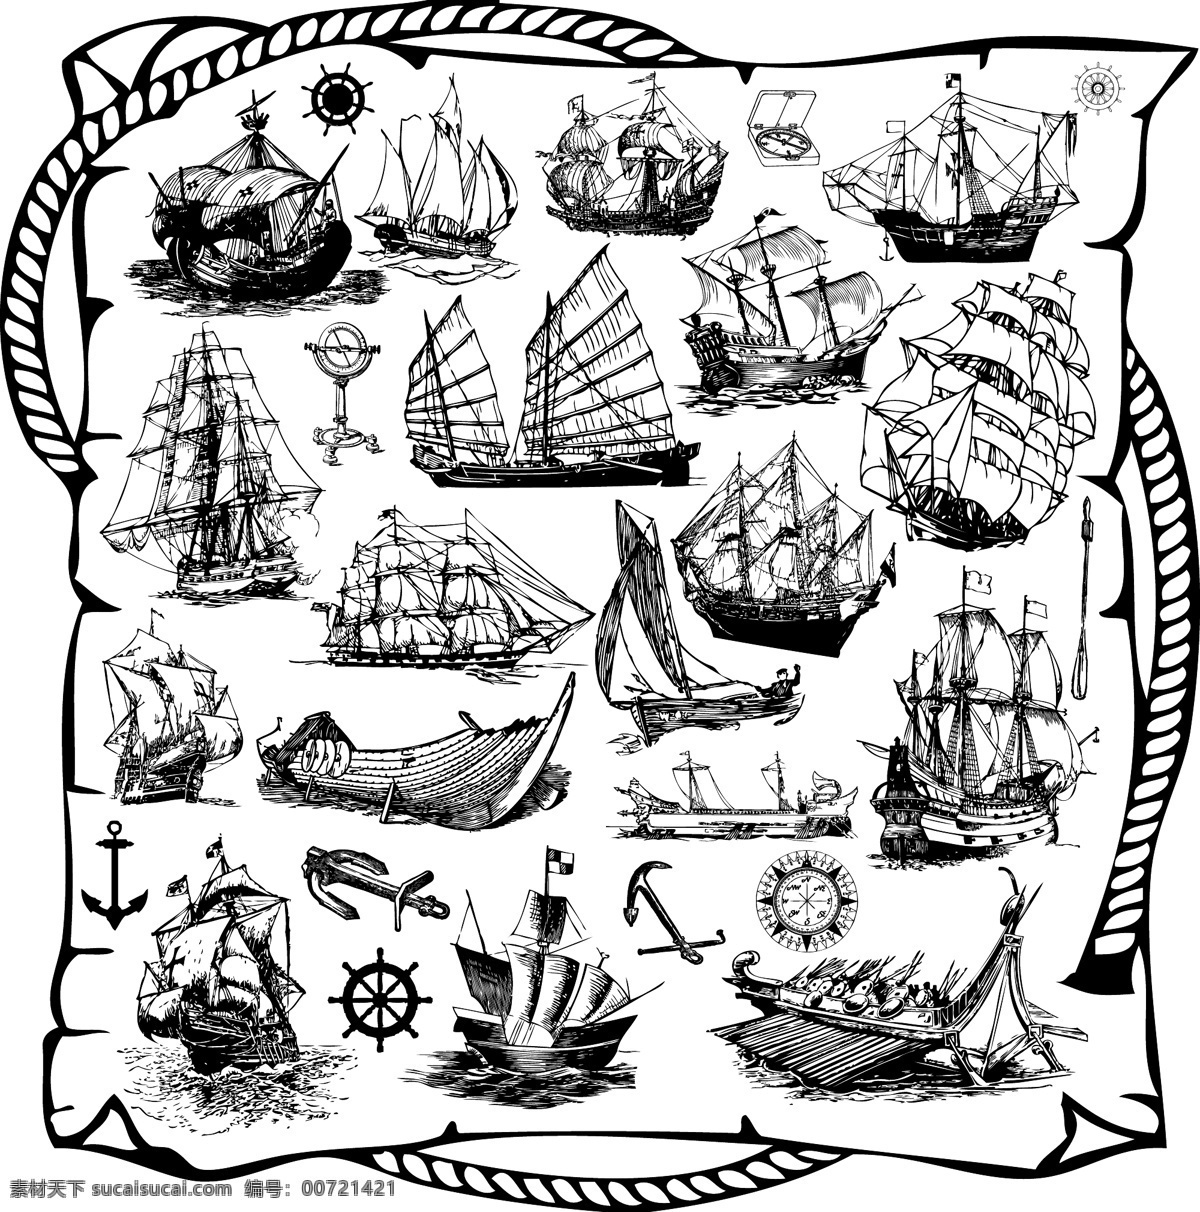 轮盘 帆船 矢量帆船 海盗船 锚 帆船绳索 黑白帆船 舵手 轮舵 大型帆船 小帆船 零售素材